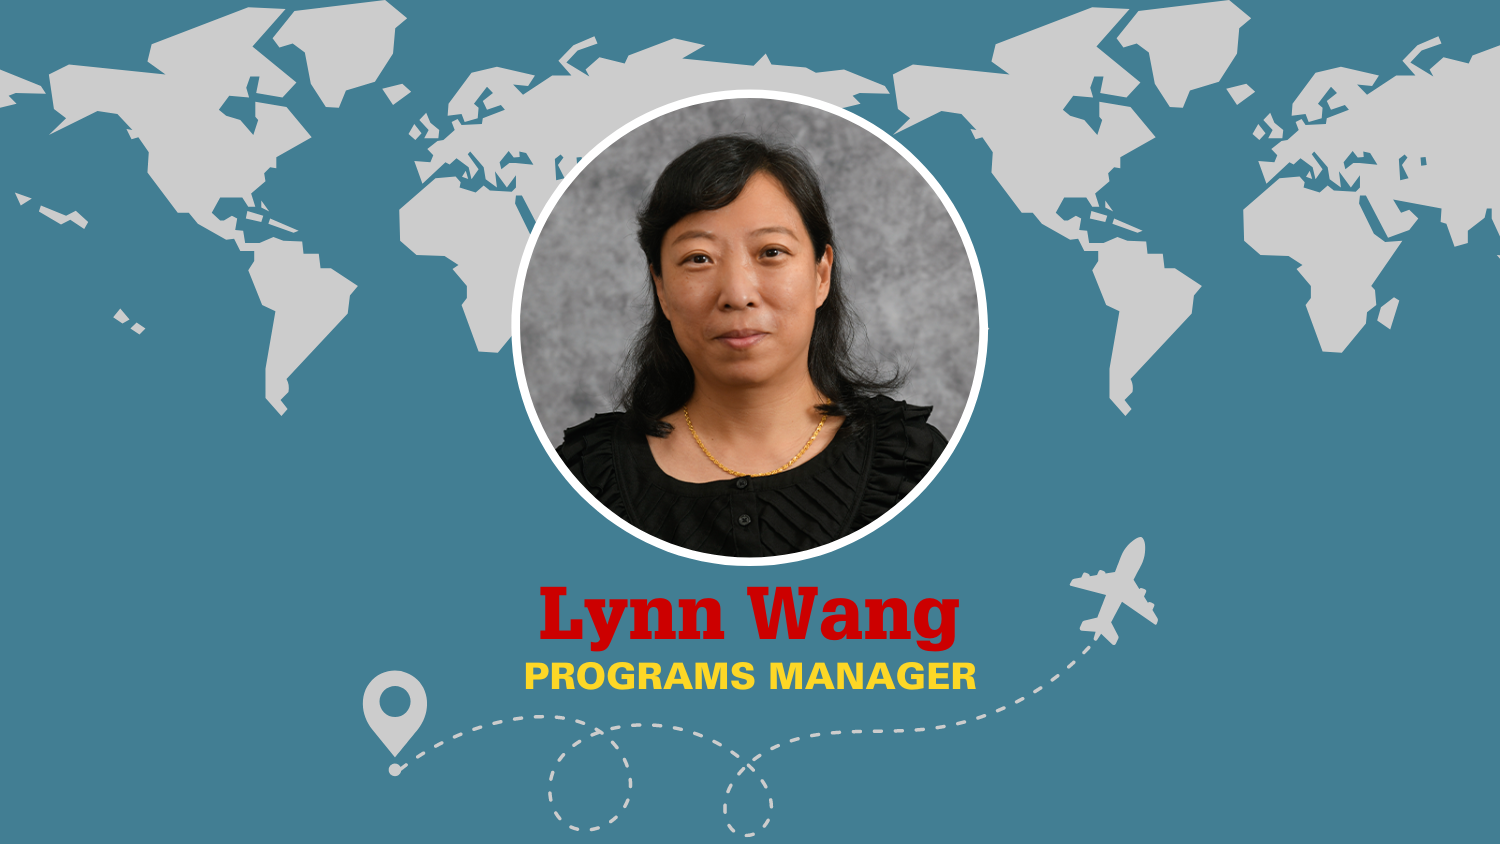 Meet Lynn Wang